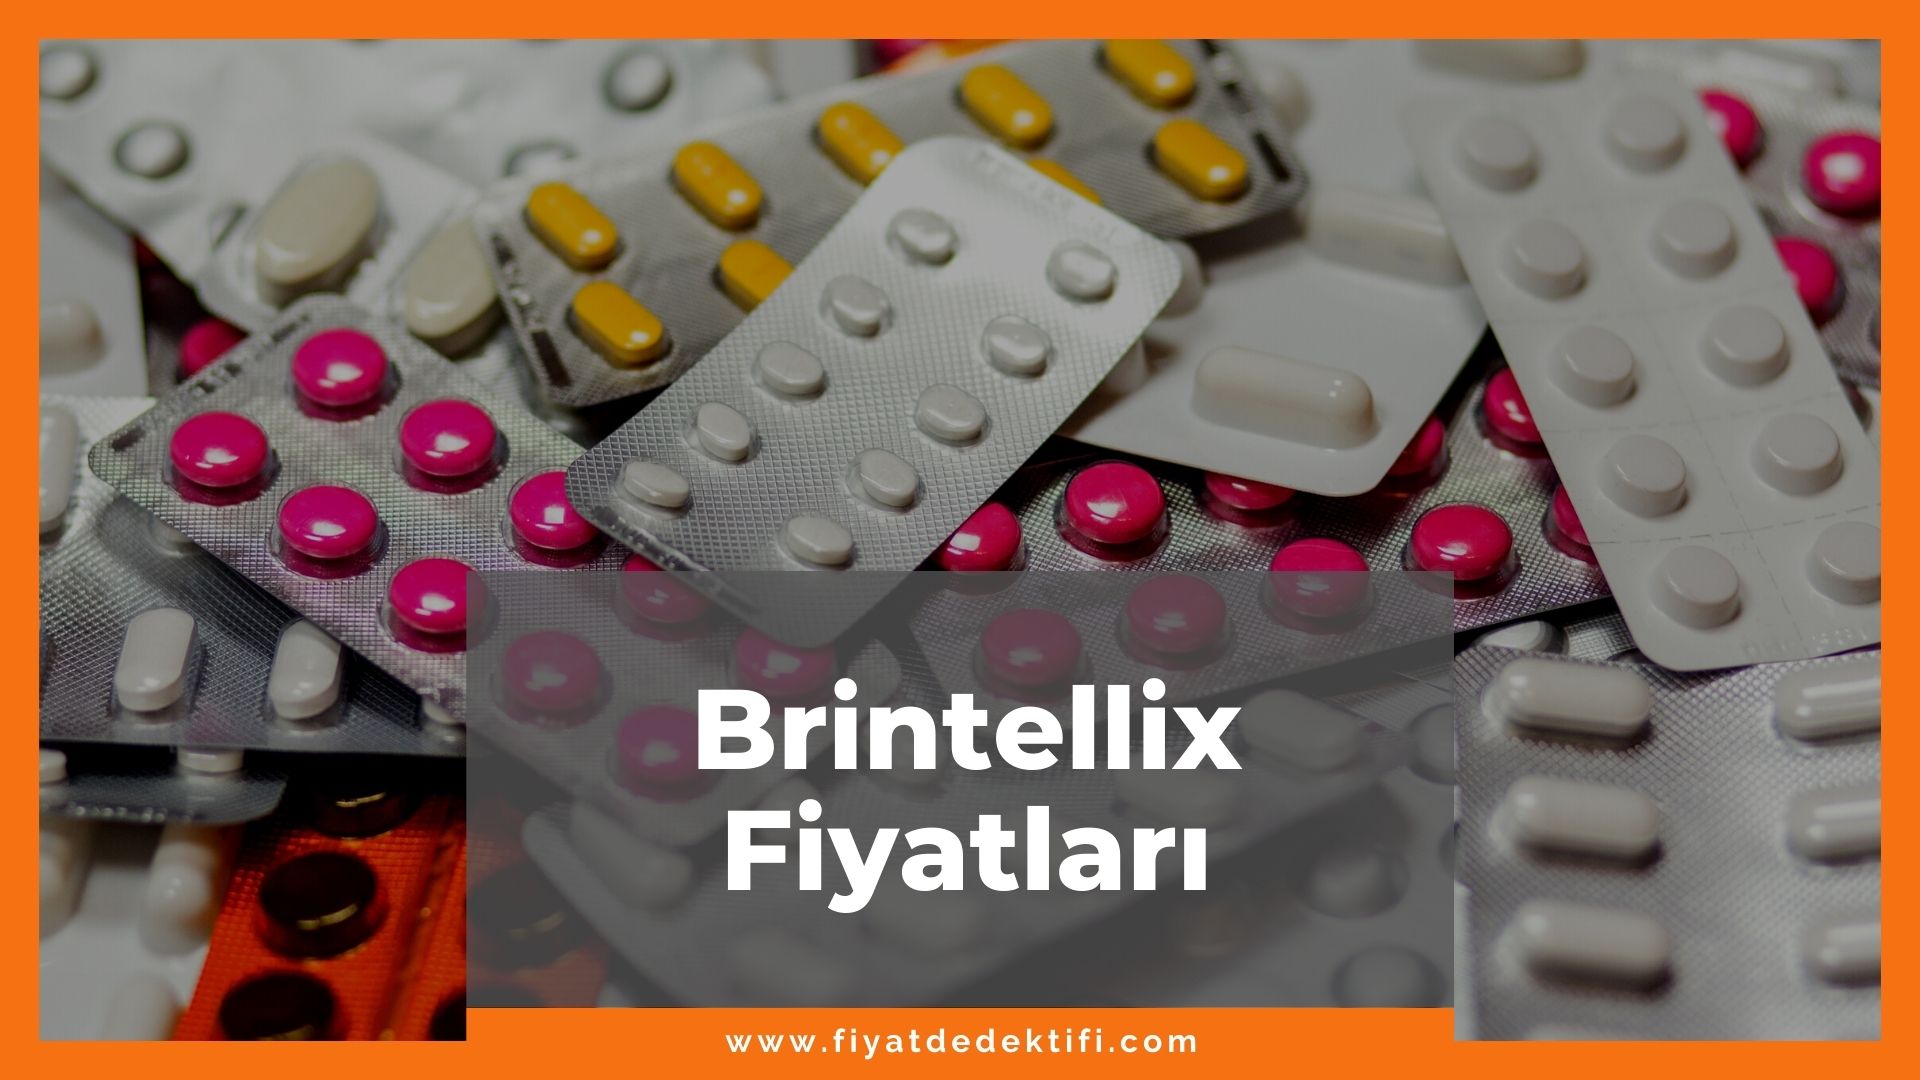 Brintellix Fiyat 2021, Brintellix 10 mg 20 mg 5 mg Fiyatı, brintellix zamlandı mı, brintellix zamlı fiyat ne kadar kaç tl oldu